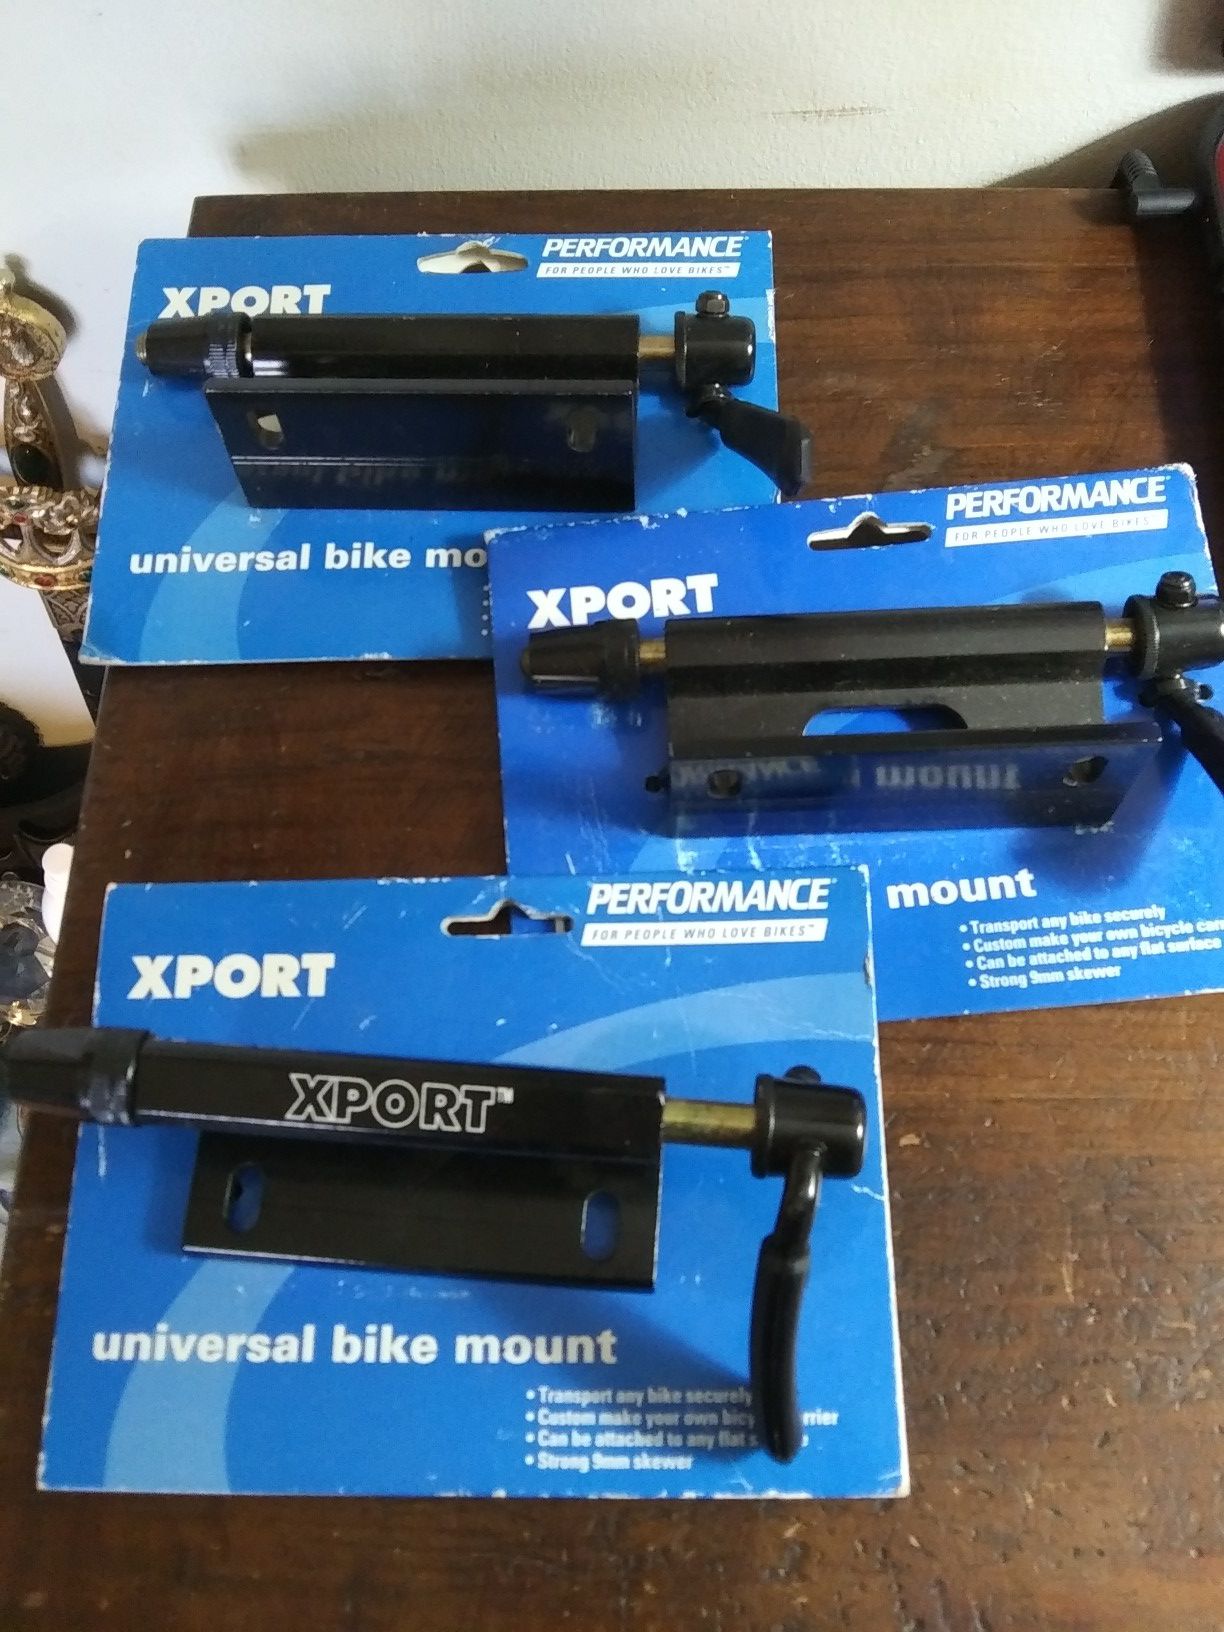 Universal bike mount xport